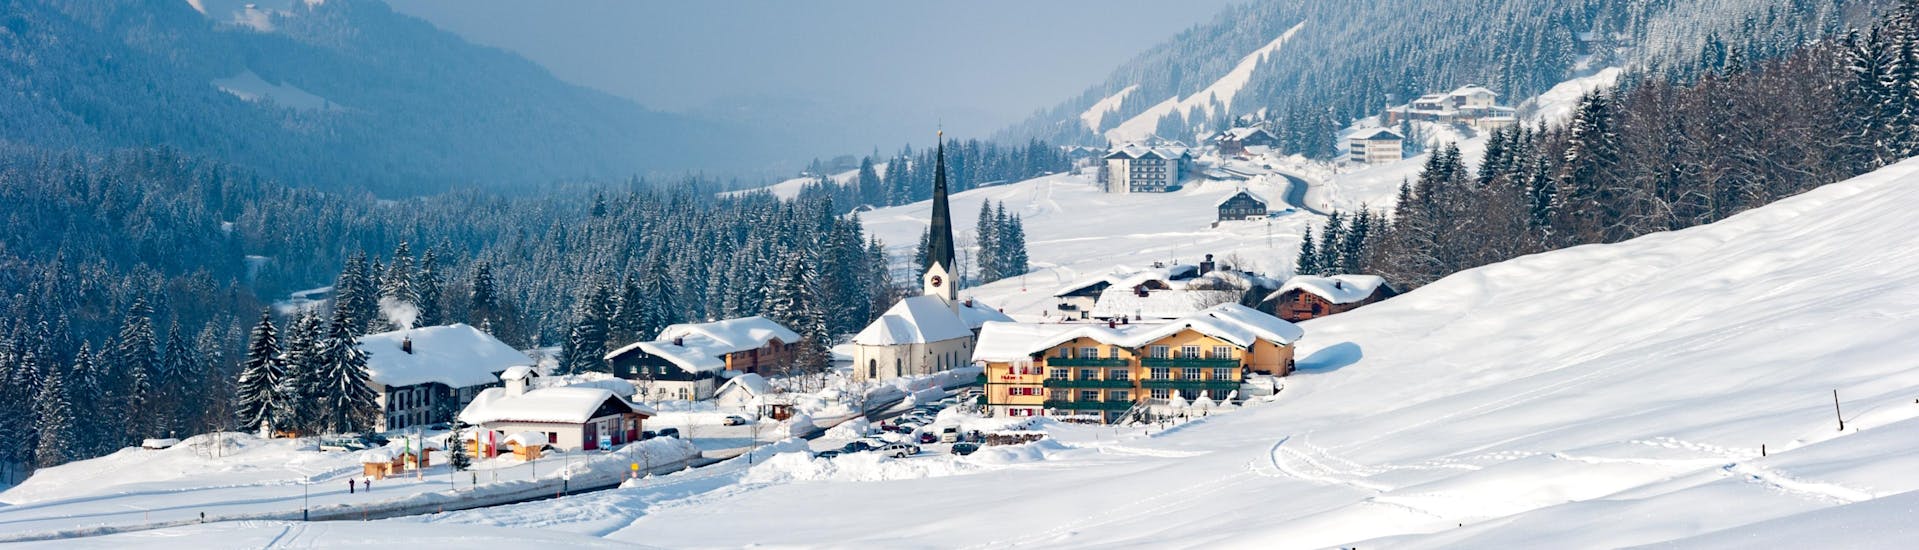 Ein Blick auf Balderschwang im Winter, einem verträumten kleinen Skigebiet in Bayern in dem Besucher bei einer der örtlichen Skischulen einen Skikurs buchen können.